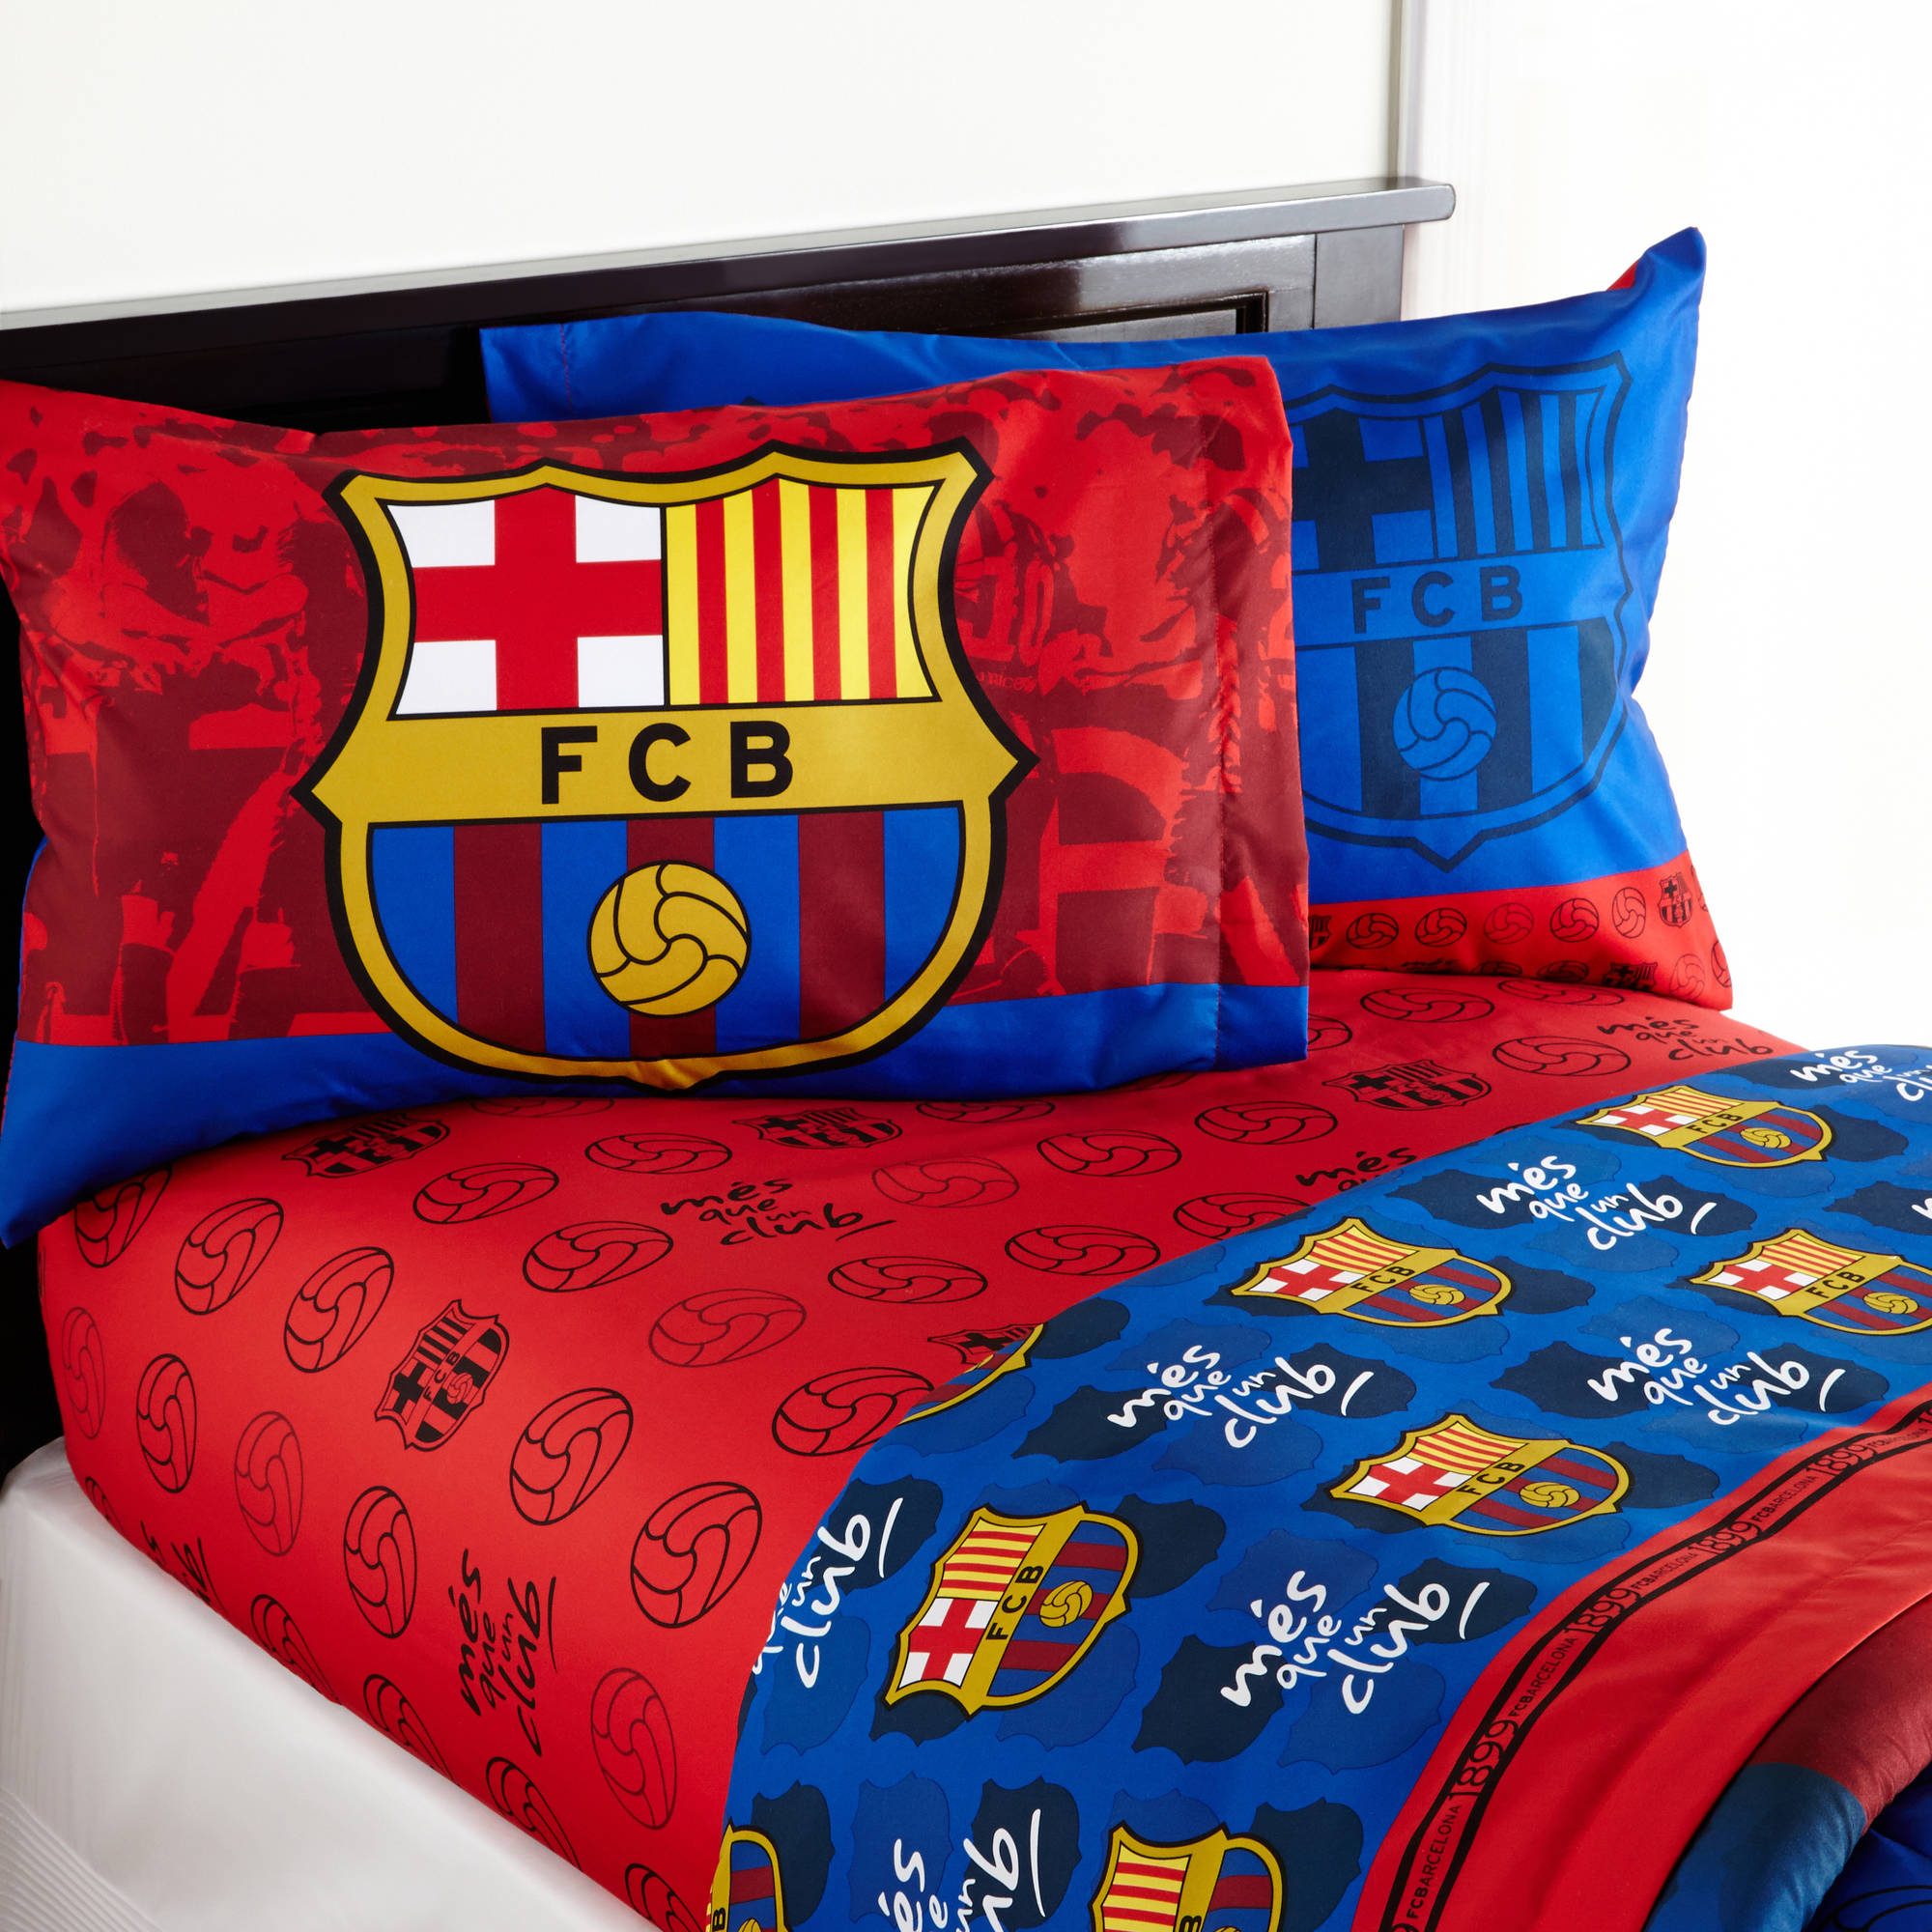 Barcelona 'FCB Soccer' Bedding Sheet Set - image 1 of 4